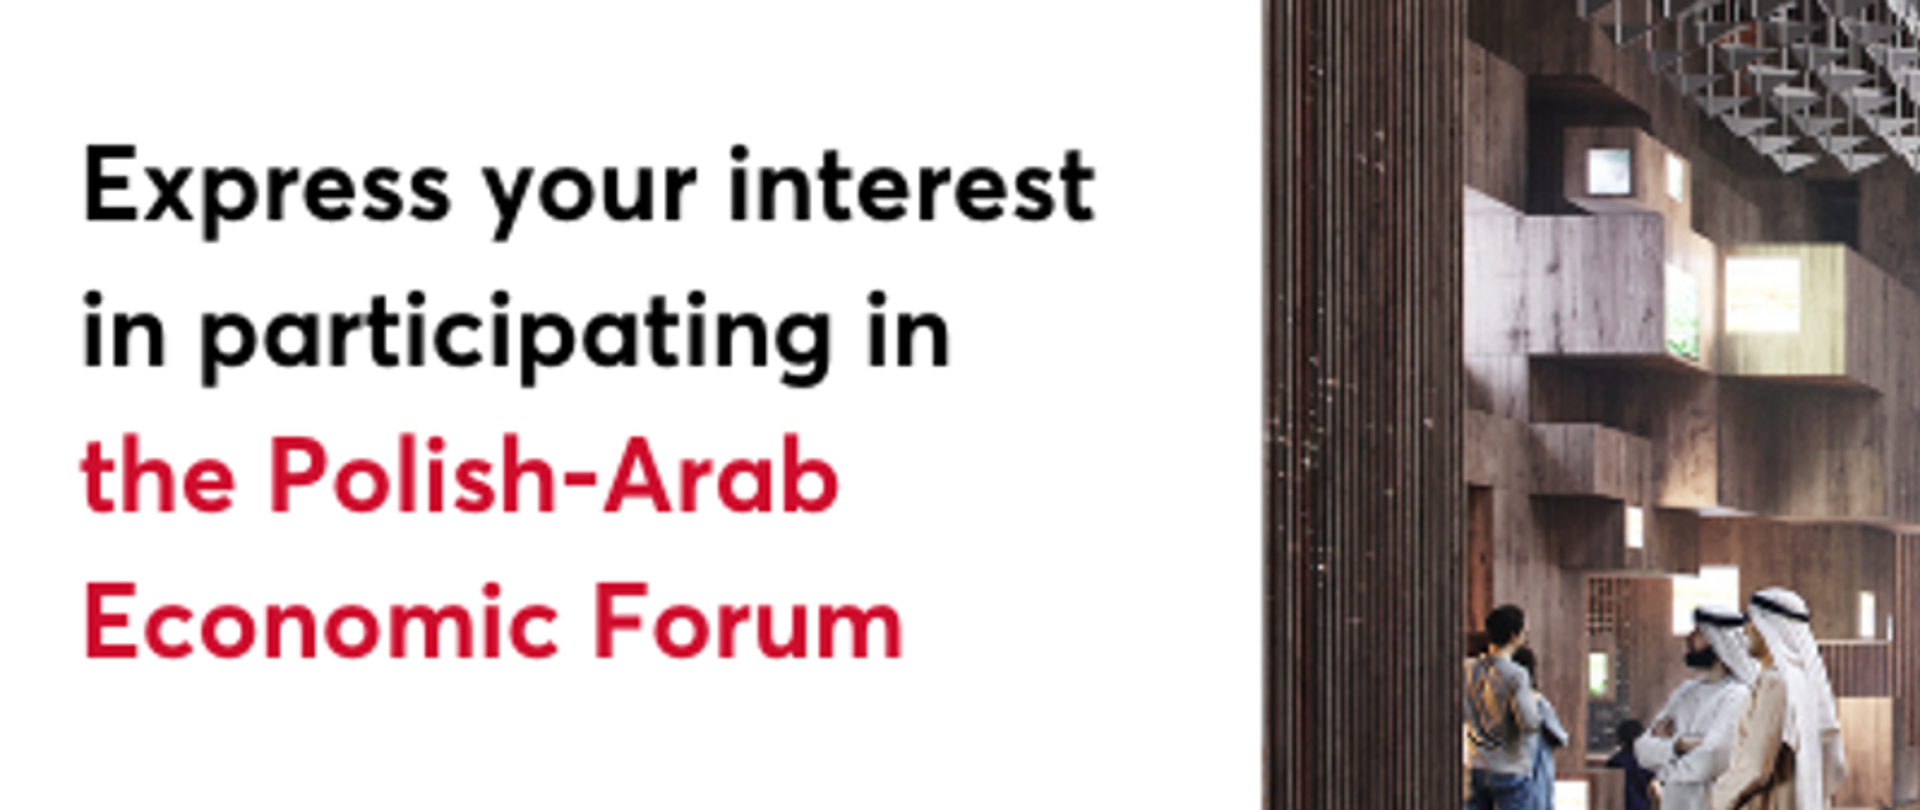 Polish-Arab Economic Forum